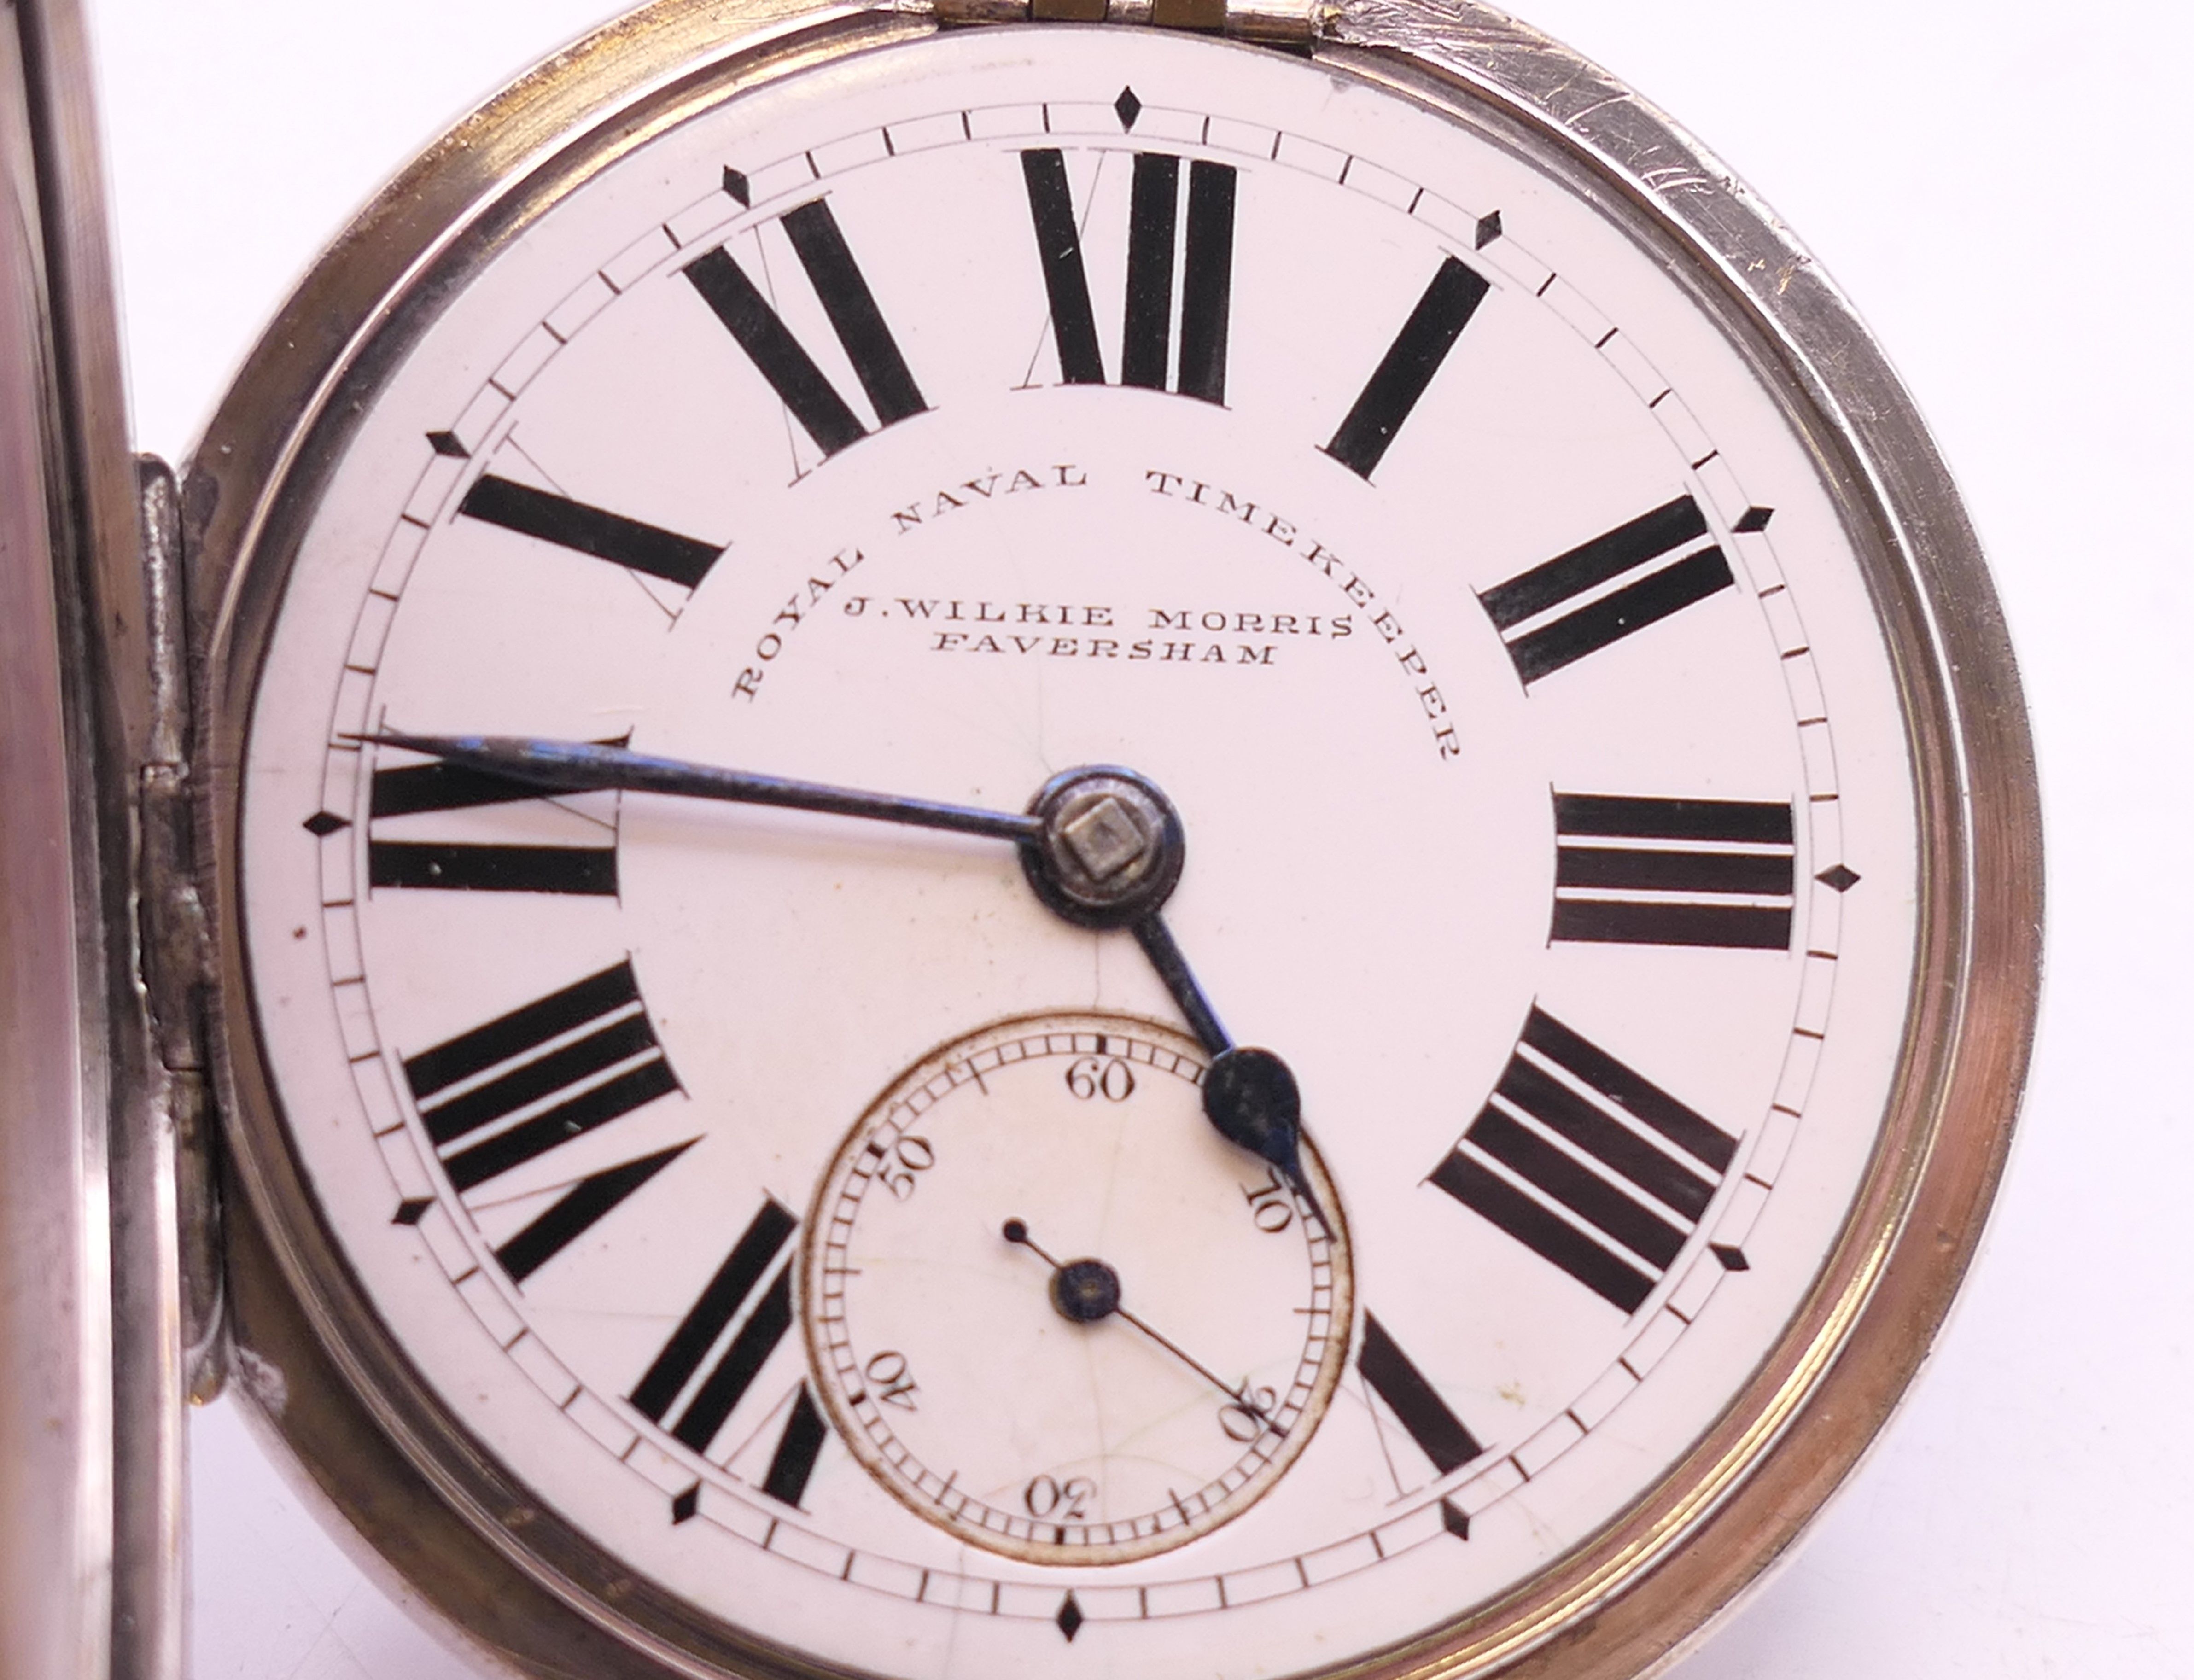 A J Wilkie Morris of Faversham Royal Naval Timekeeper silver pocket watch, hallmarked Chester 1893. - Bild 5 aus 7